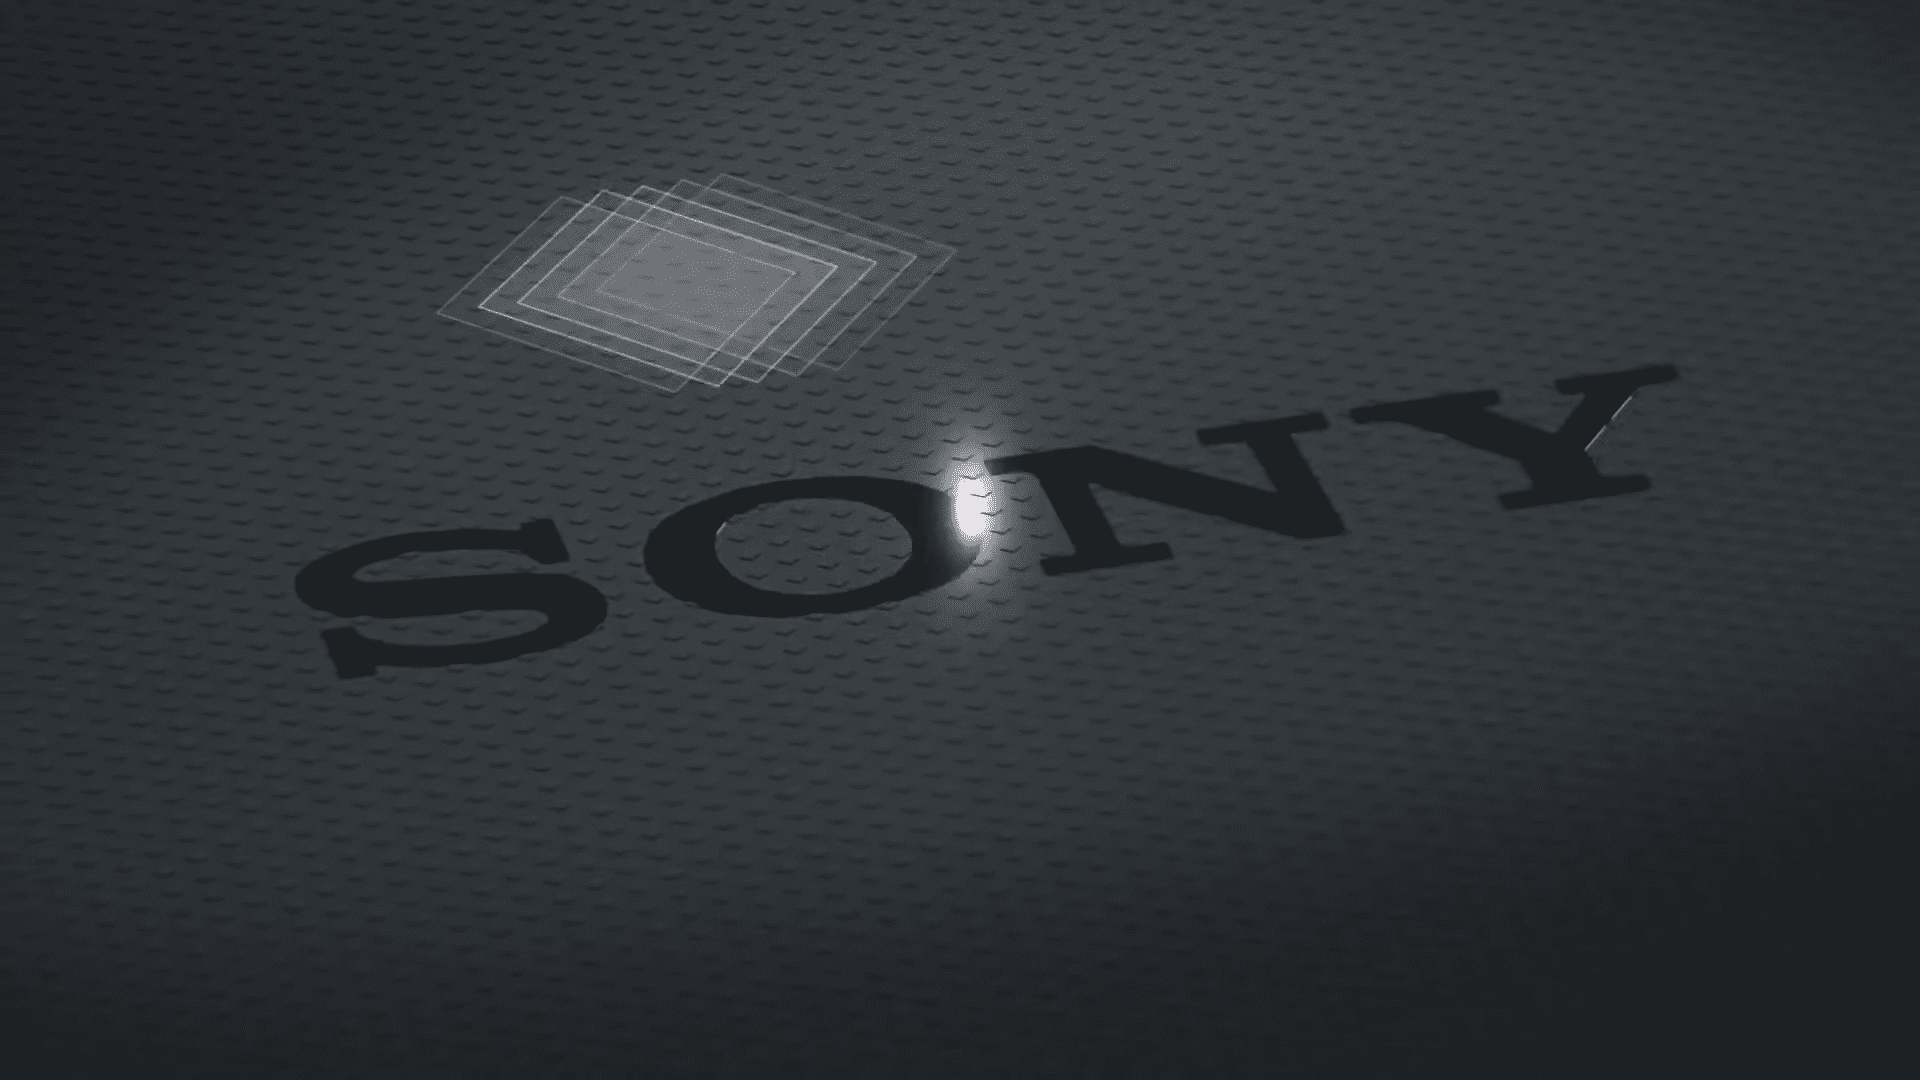 El Sony Xperia 1 VI es oficial con pantalla tipo TV y zoom óptico de 7,1x